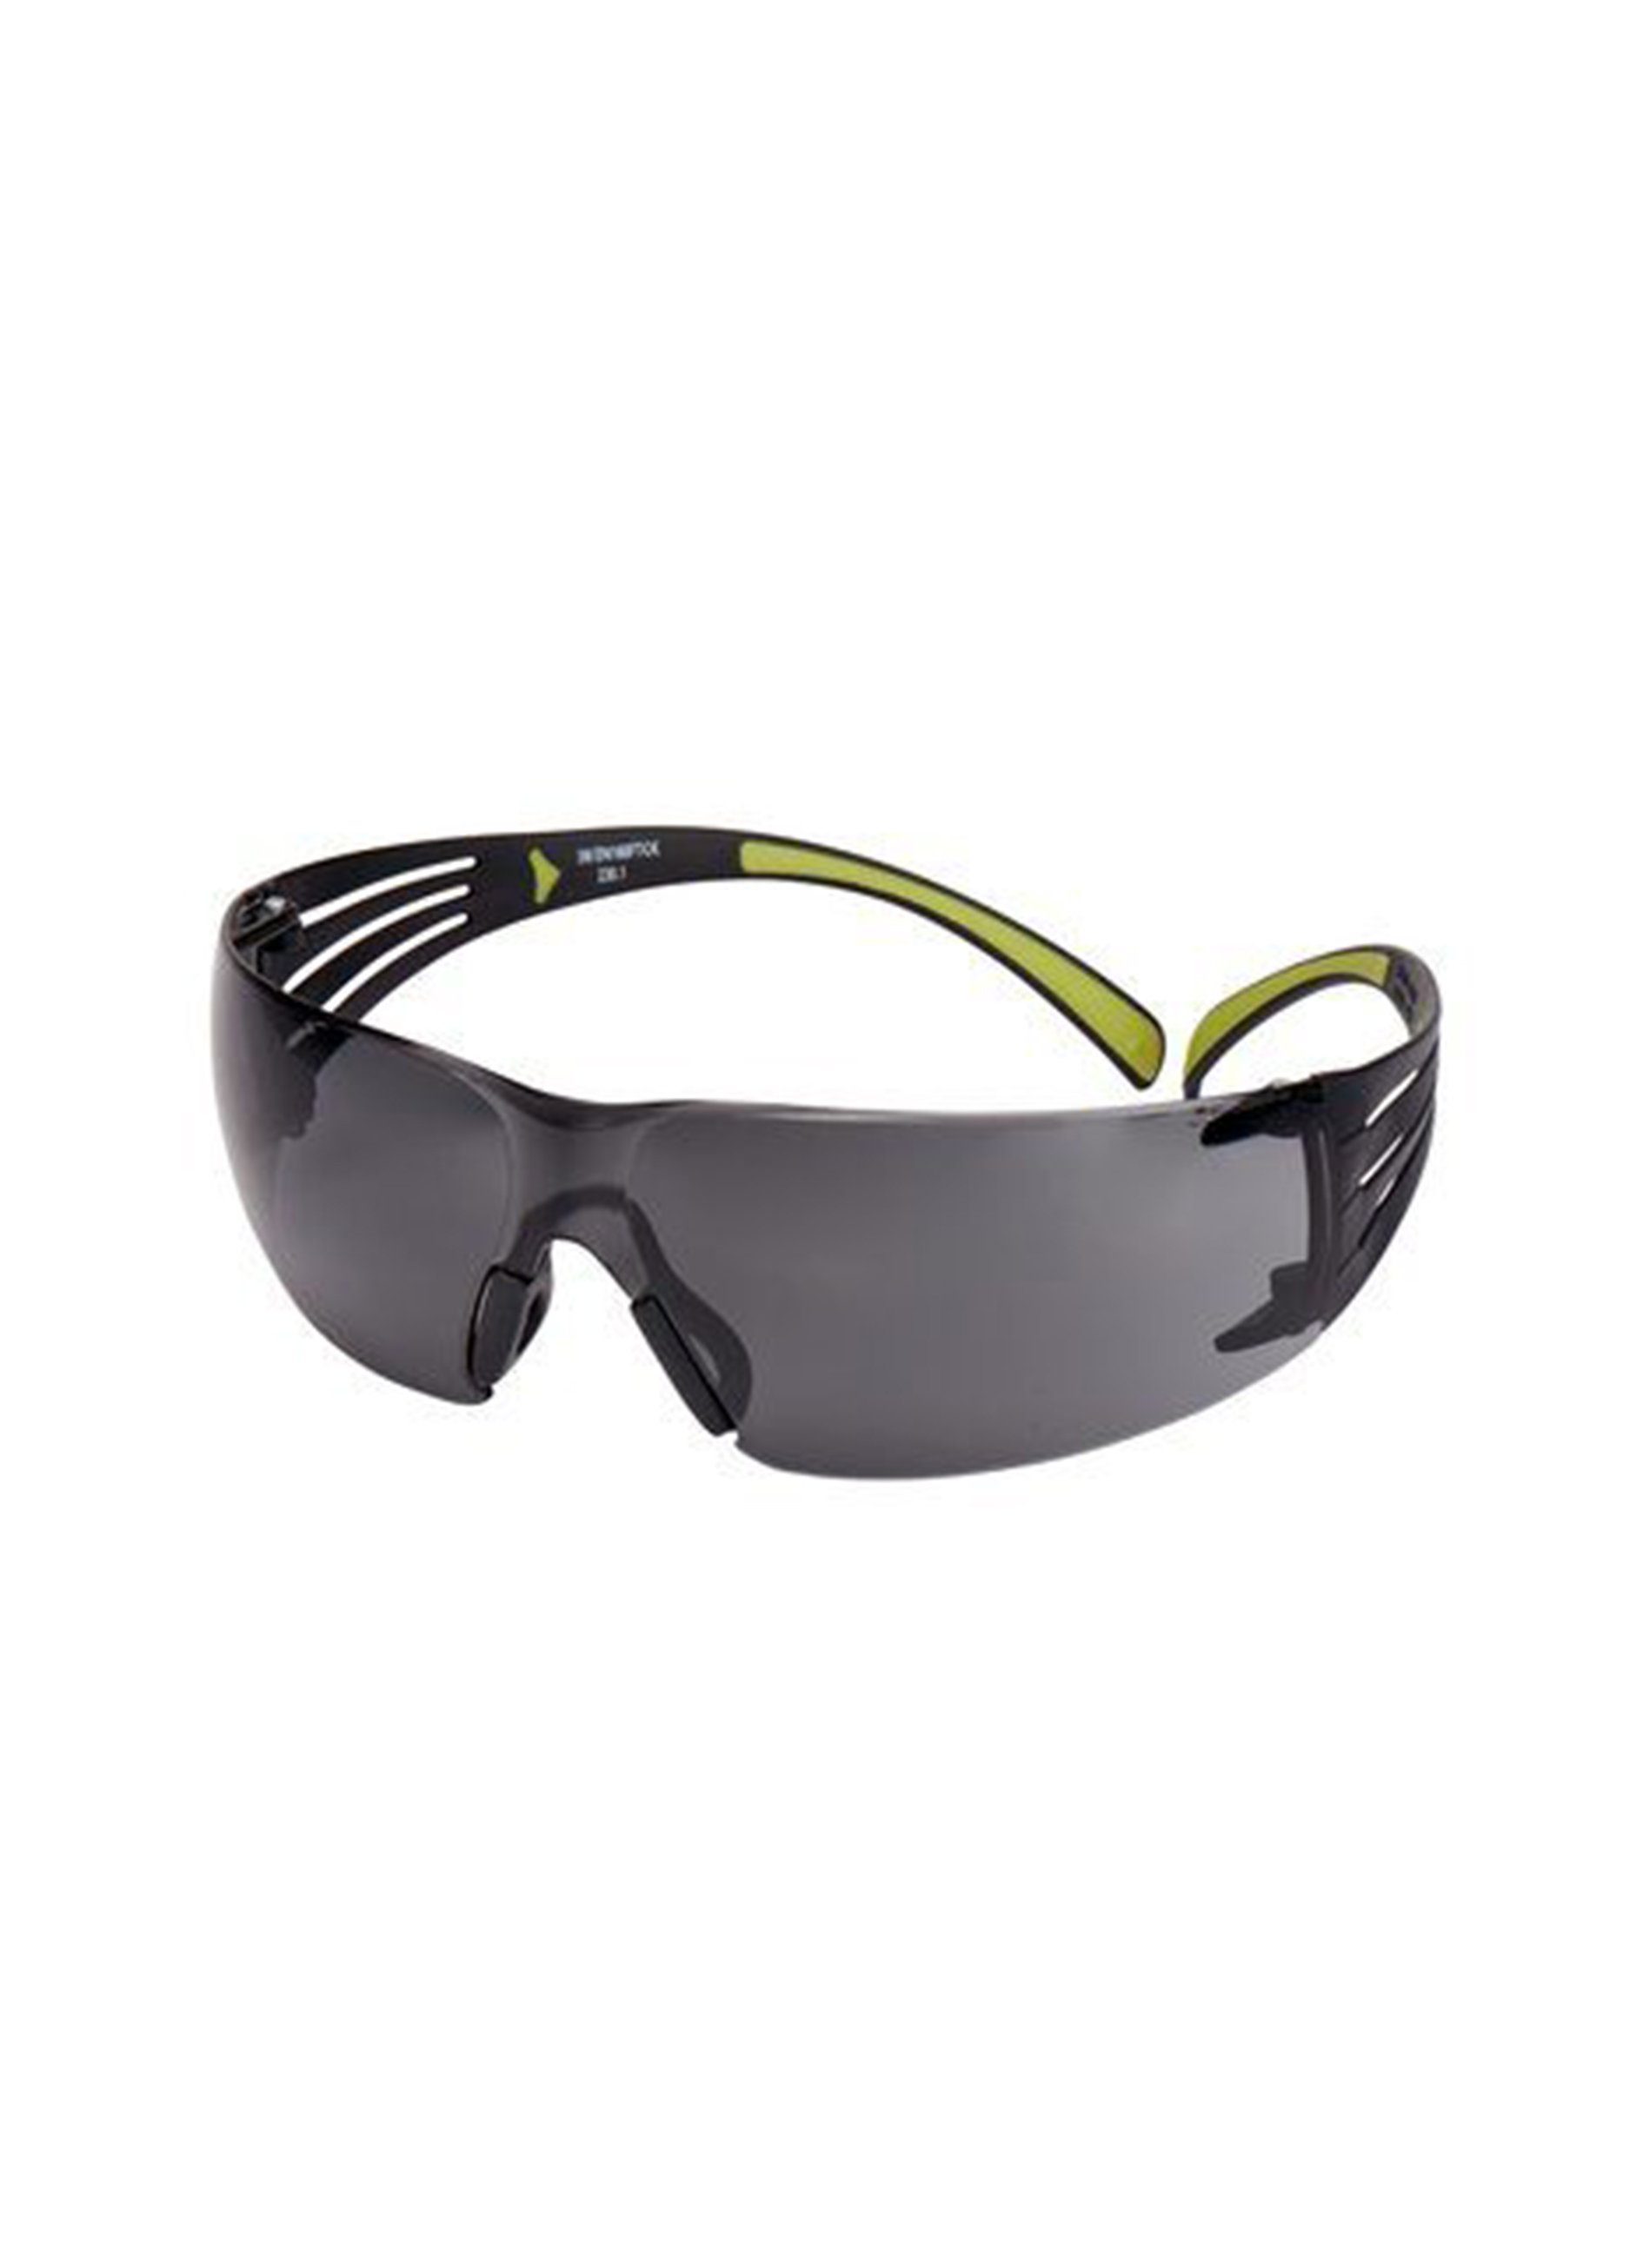 Bügel, ein Schutzbrille, Brille Scheibe, 400 3M™ hervorragenden leicht schwarz/grüne Sichtfeld, SecureFit™ sehr gutes bietet Schutz 3M sowie (19g) Antikratz-/Antibeschlag-Beschichtung, graue